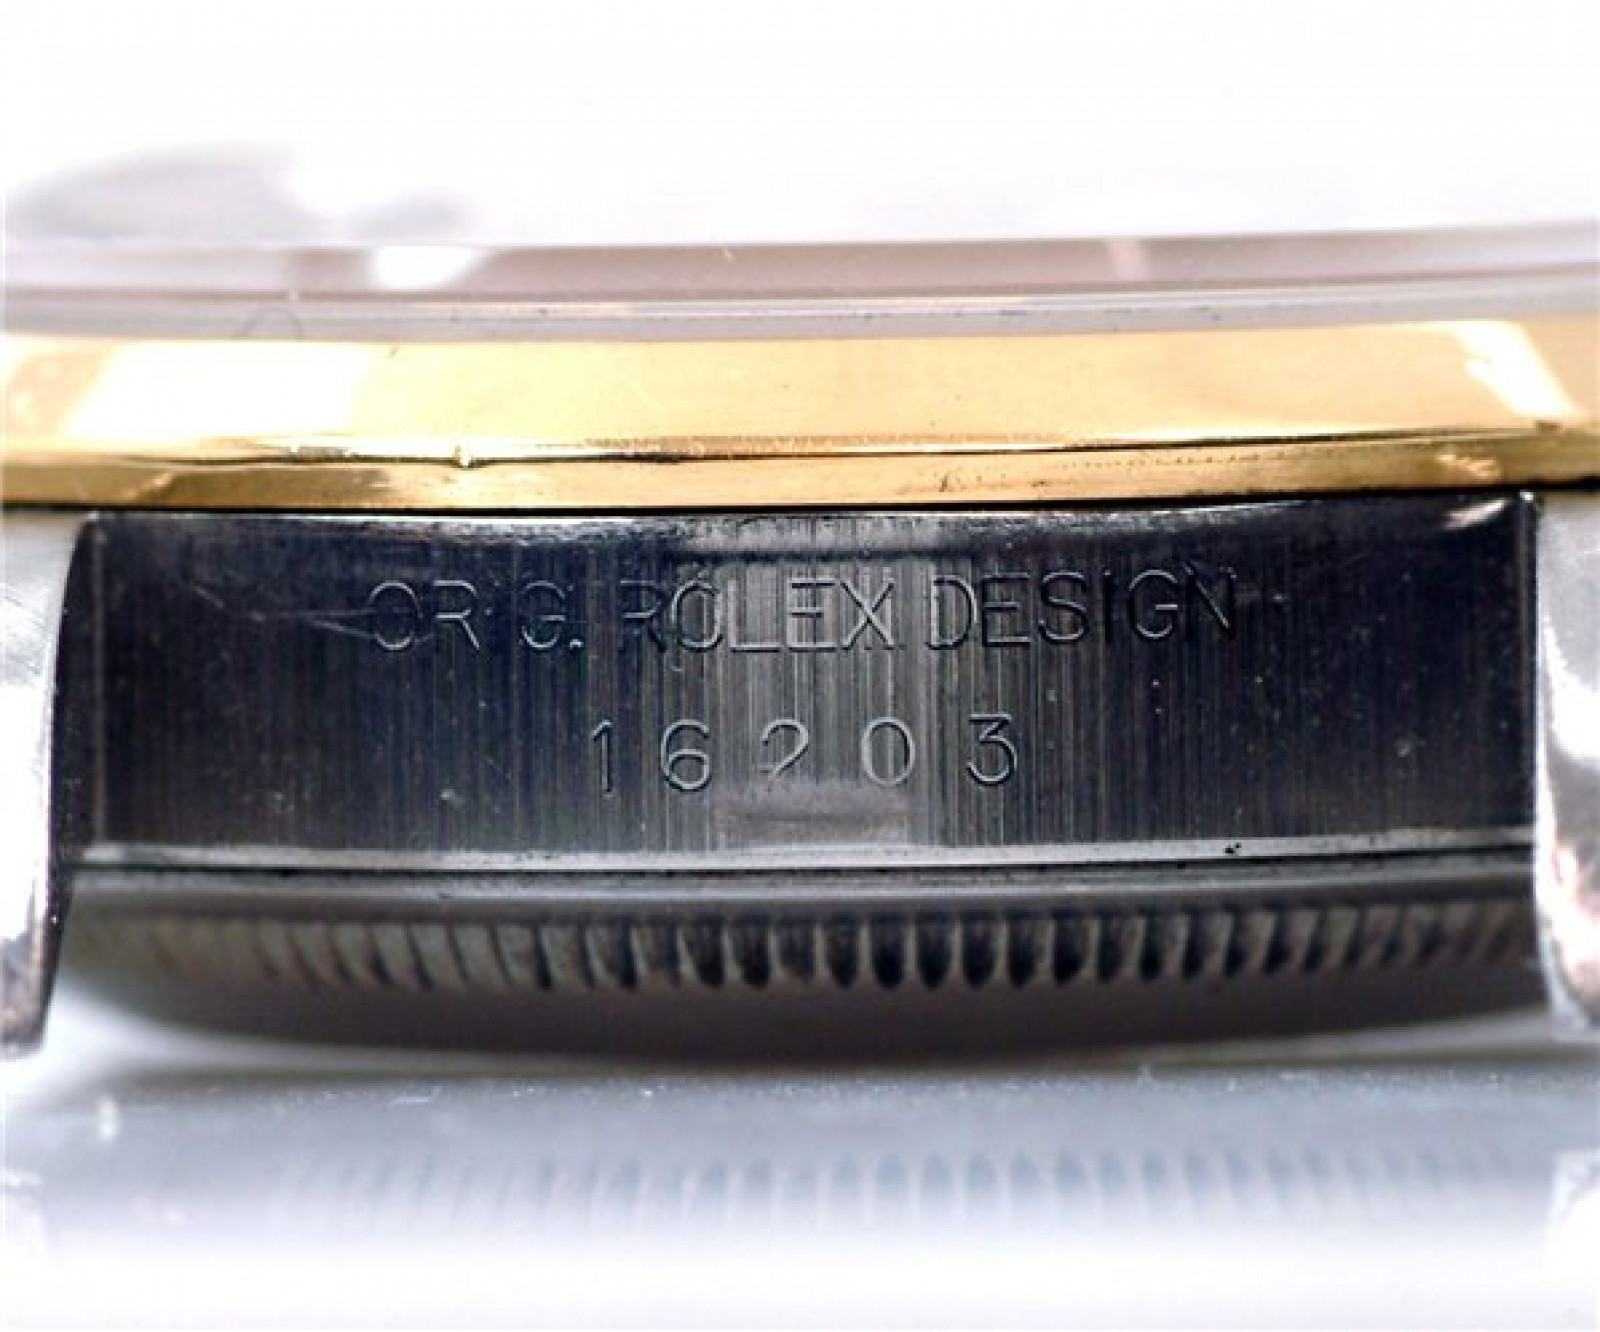 Rolex Datejust 16203 Gold & Steel 2003